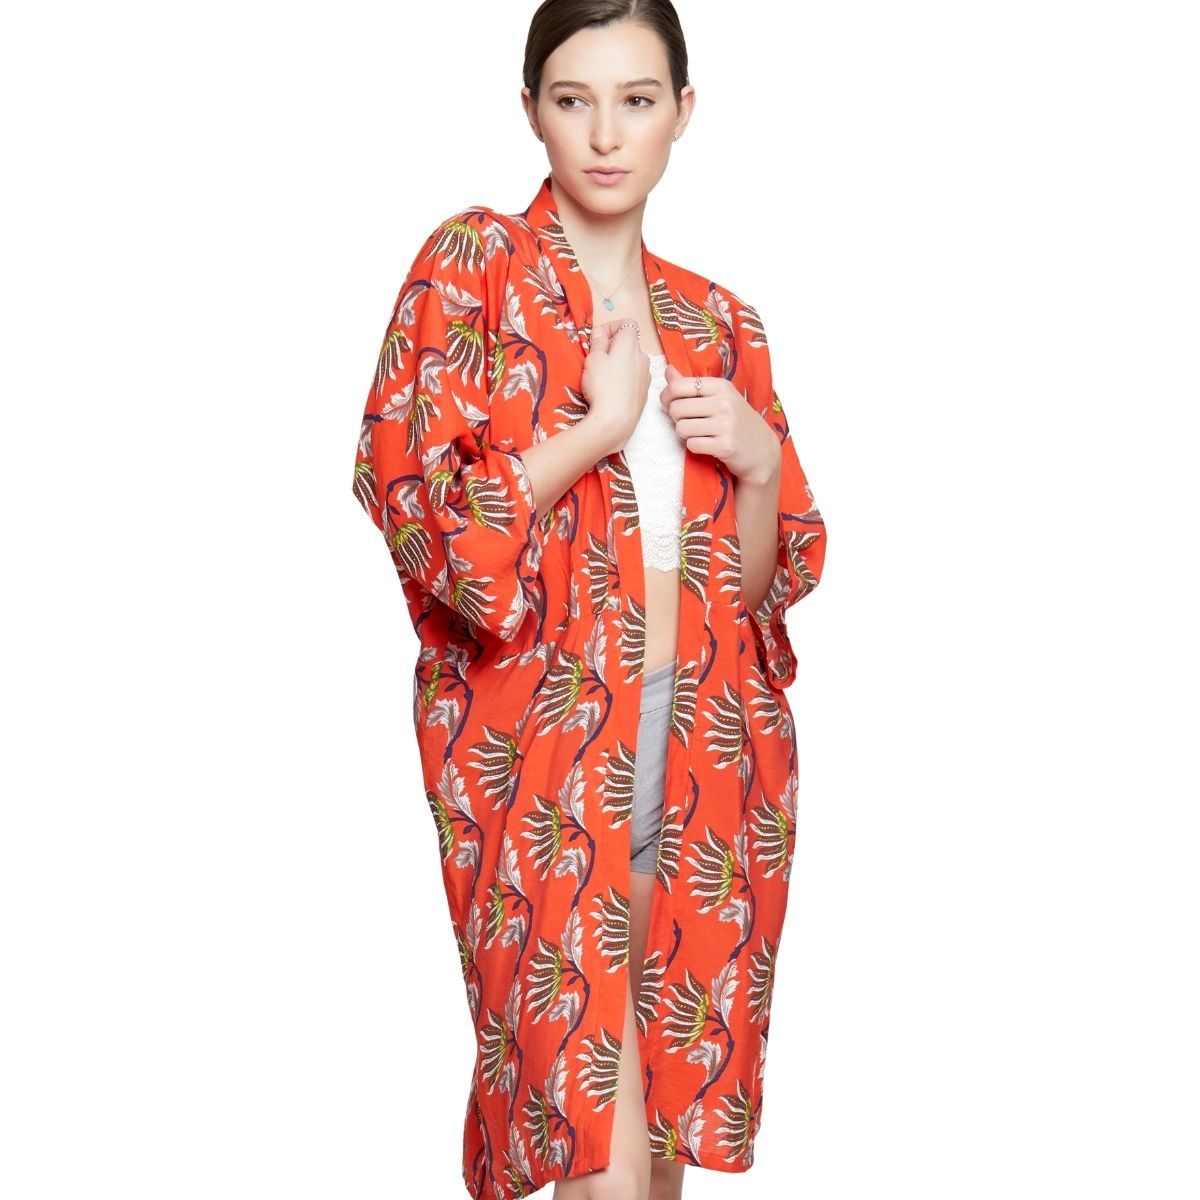 Orange Oriental Flower Long Kimono